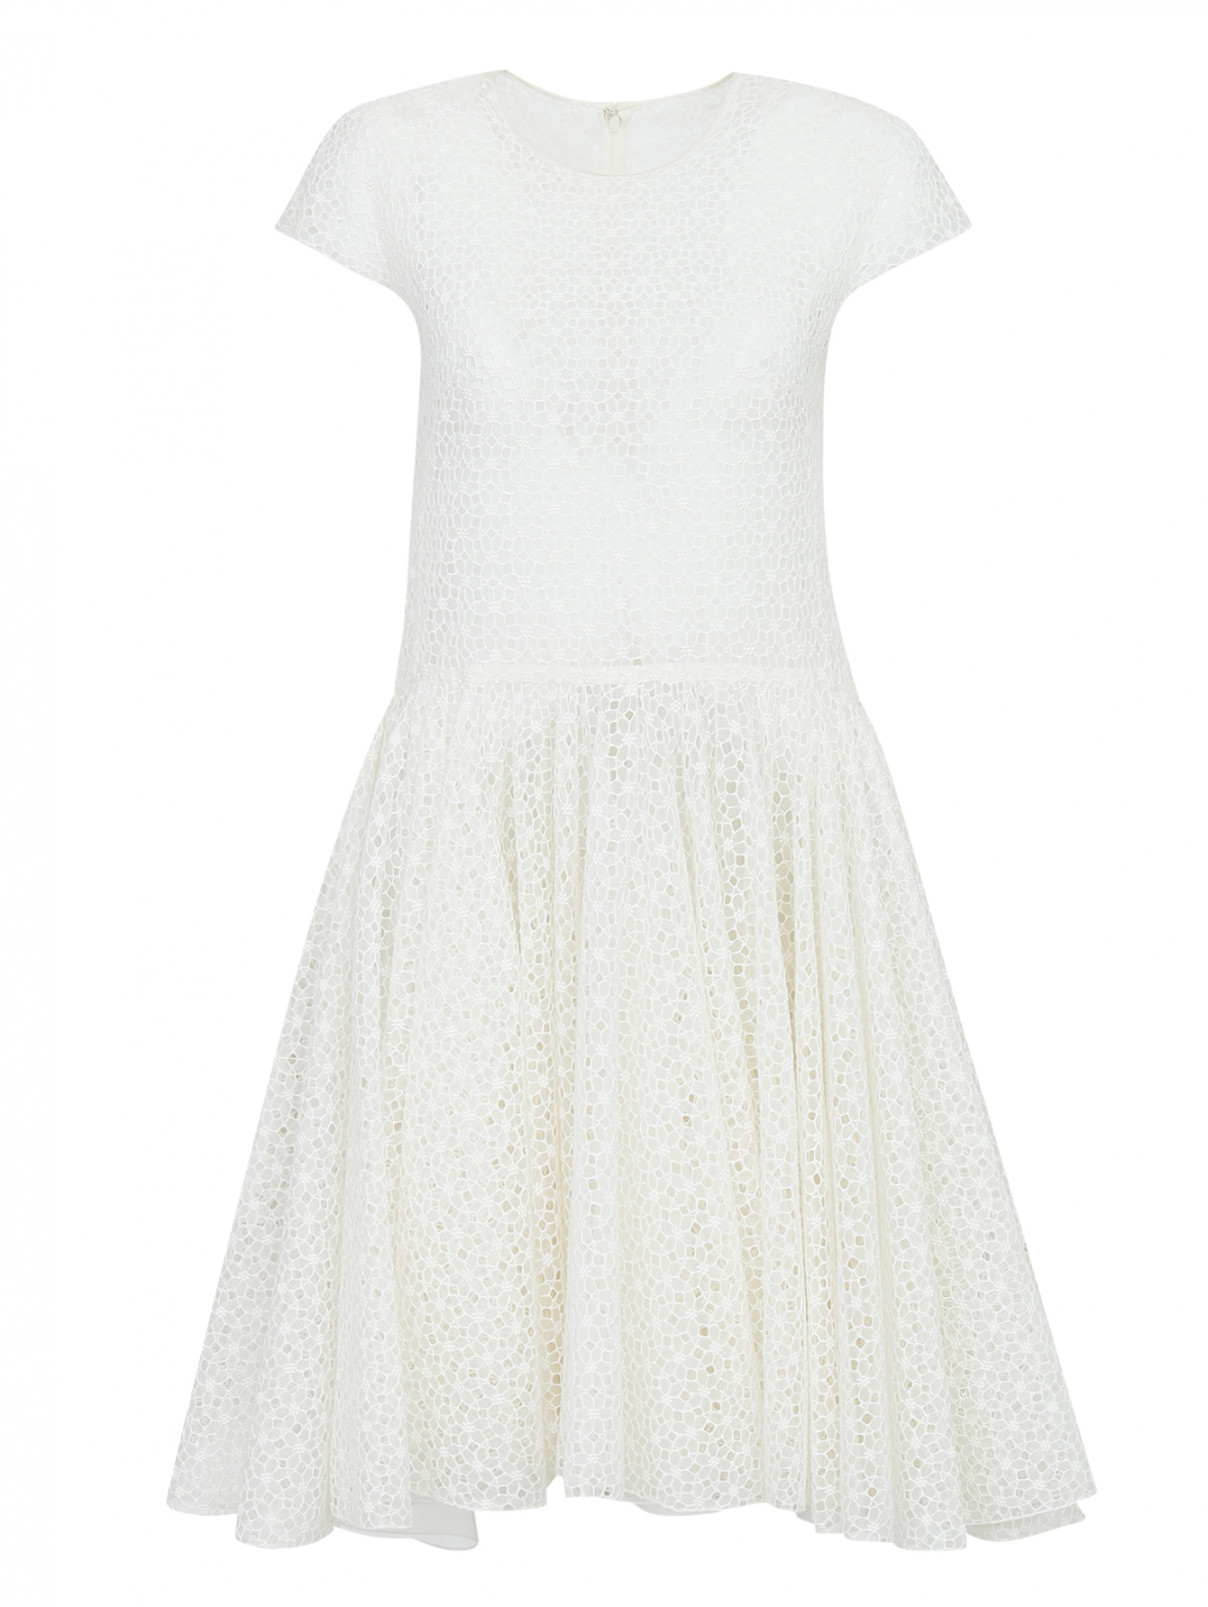 Платье-мини из хлопка и шелка с перфорацией Giambattista Valli  –  Общий вид  – Цвет:  Белый